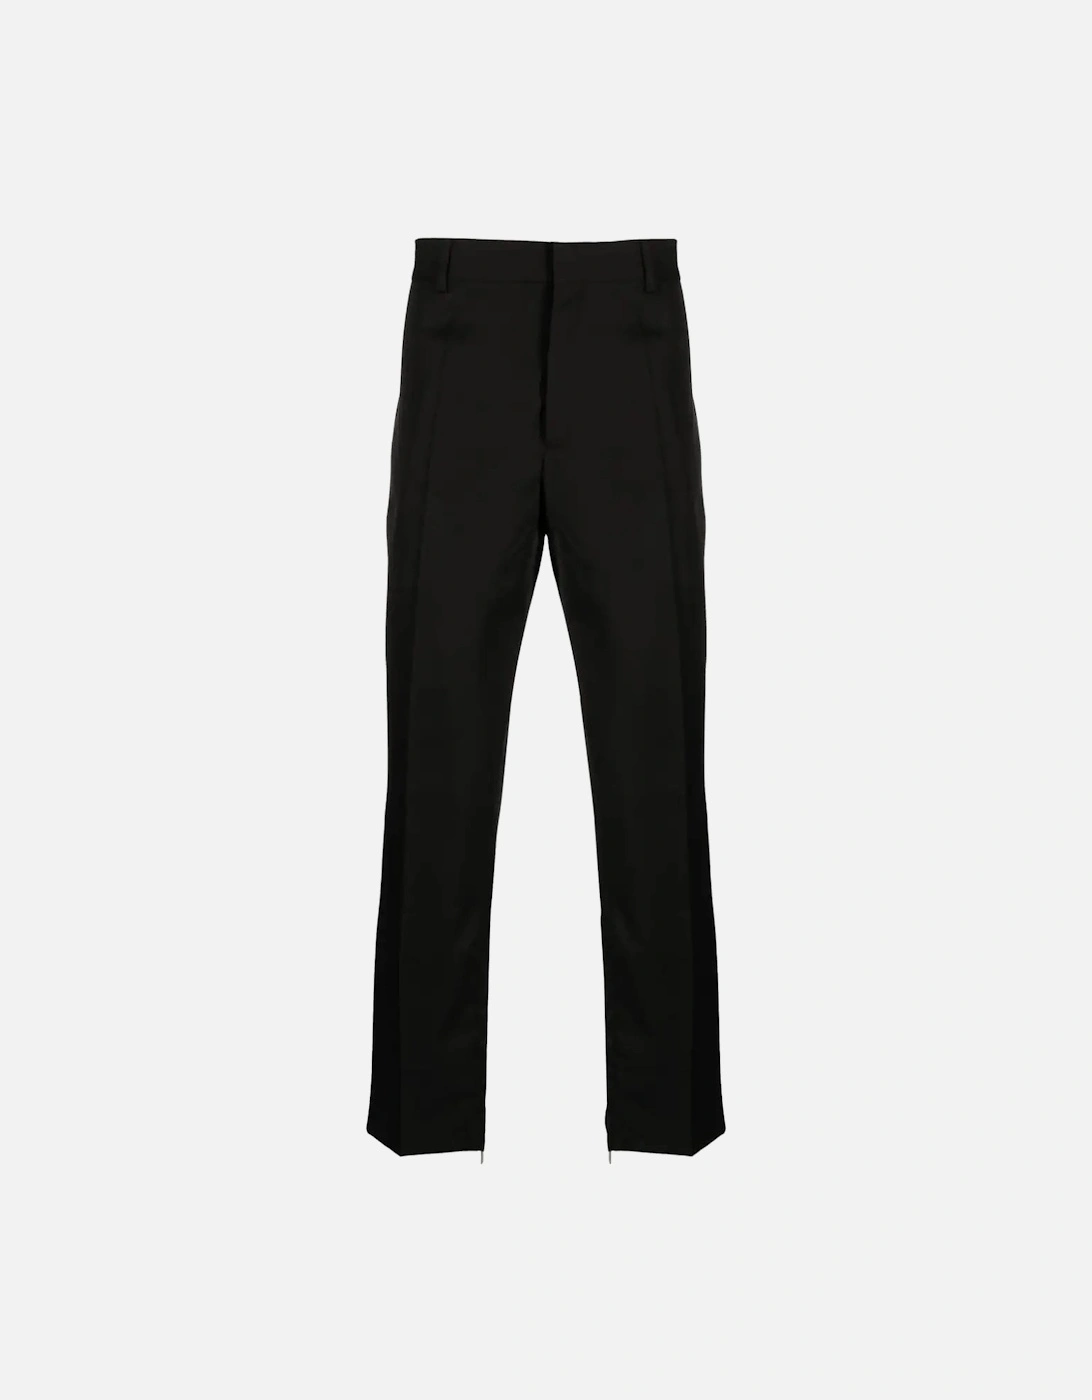 OW Slim Zip Detail Pants Black, 8 of 7